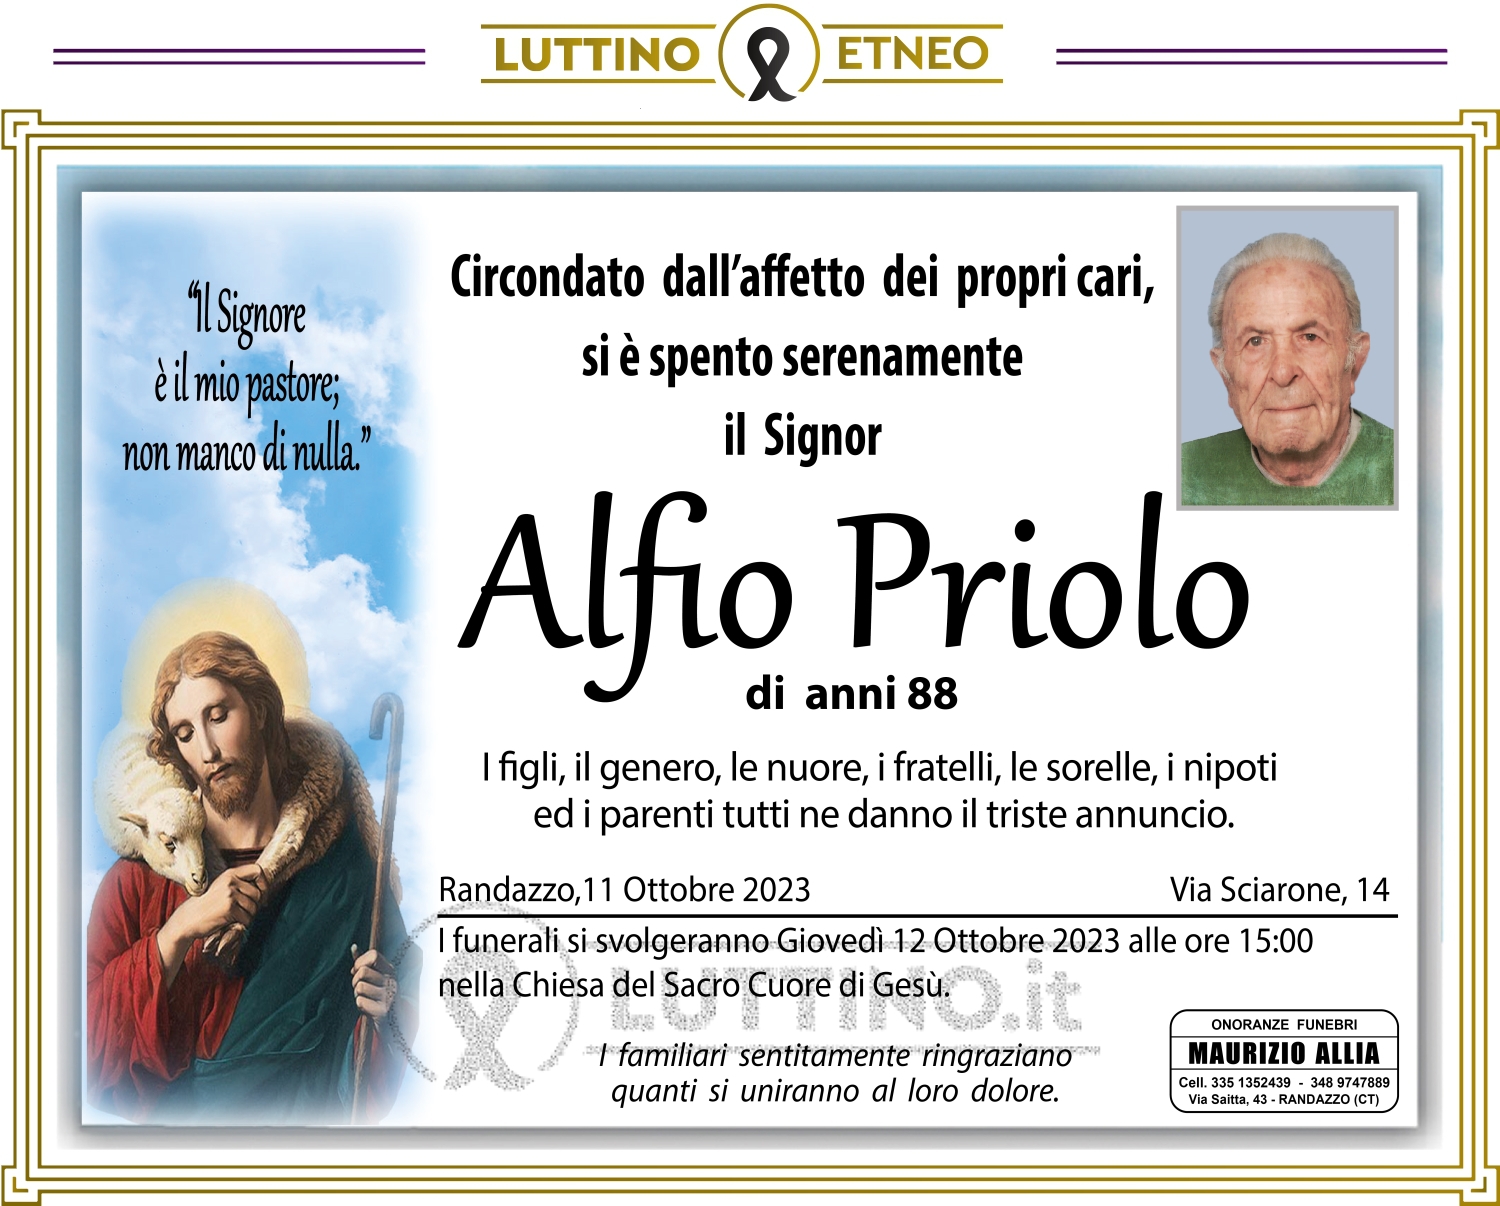 Alfio Priolo